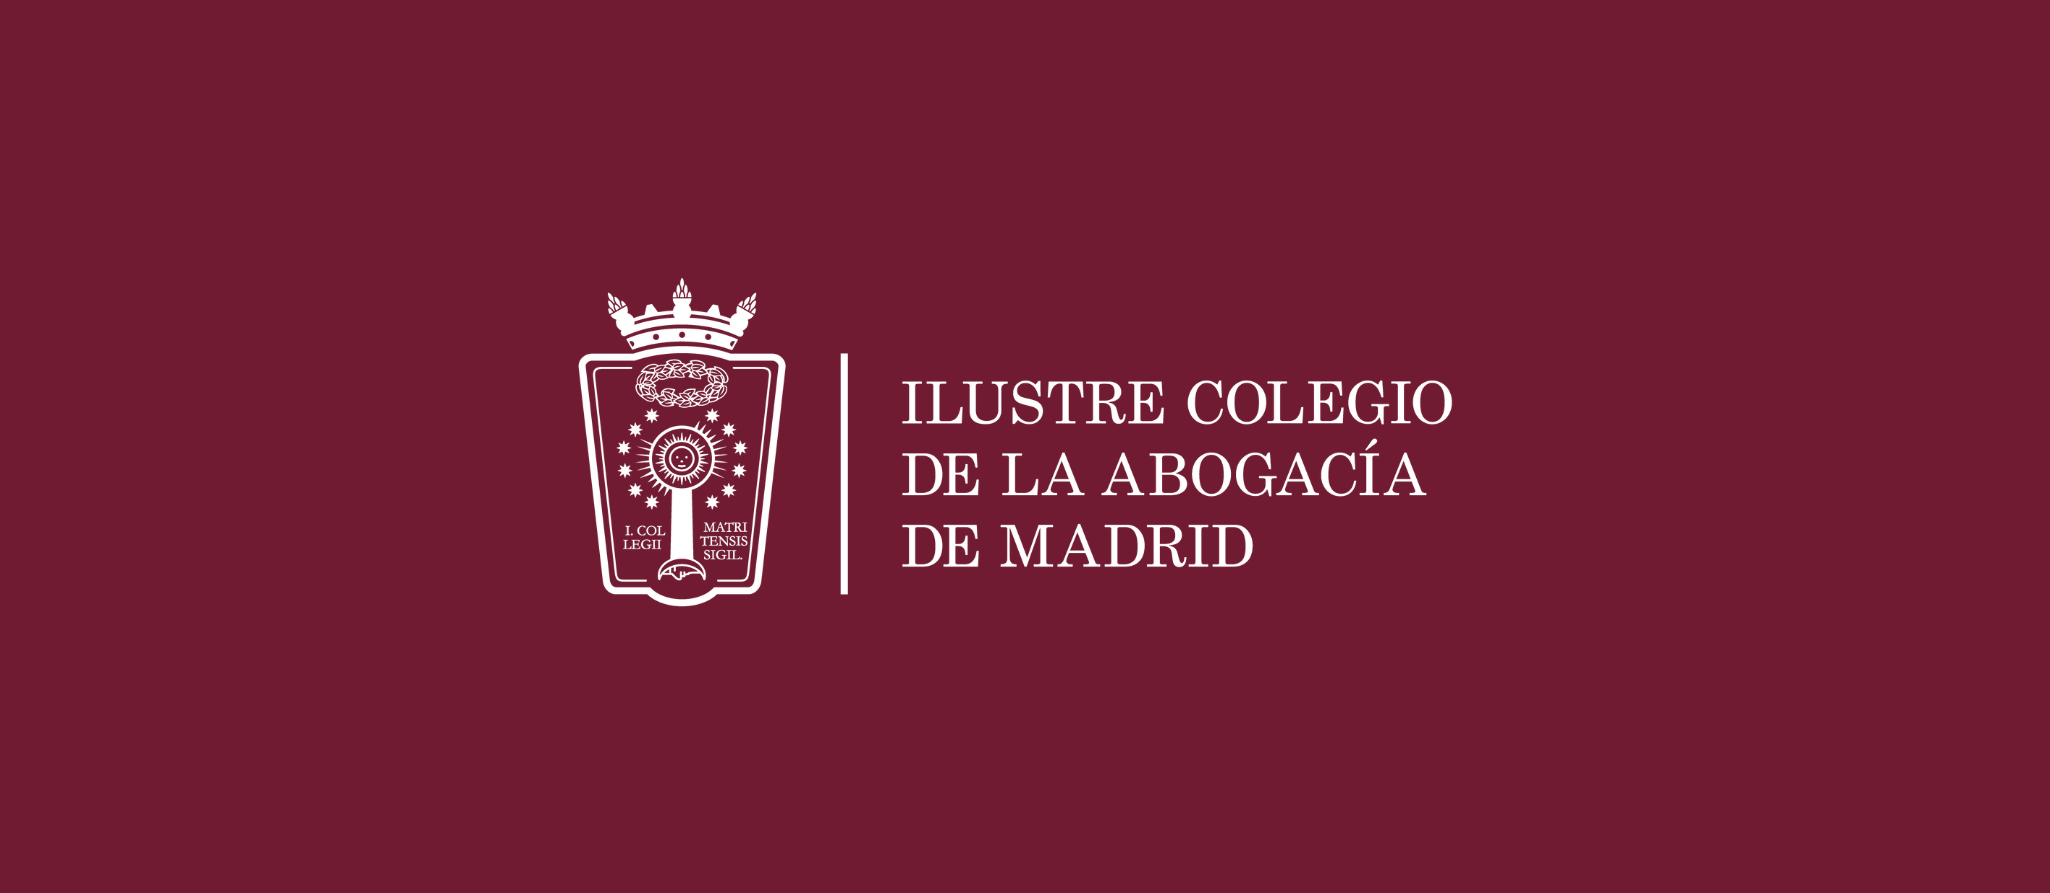 La Junta de Gobierno del Ilustre Colegio de la Abogacía de Madrid aprueba los nombramientos del nuevo director general y de la directora de Comunicación de la Institución